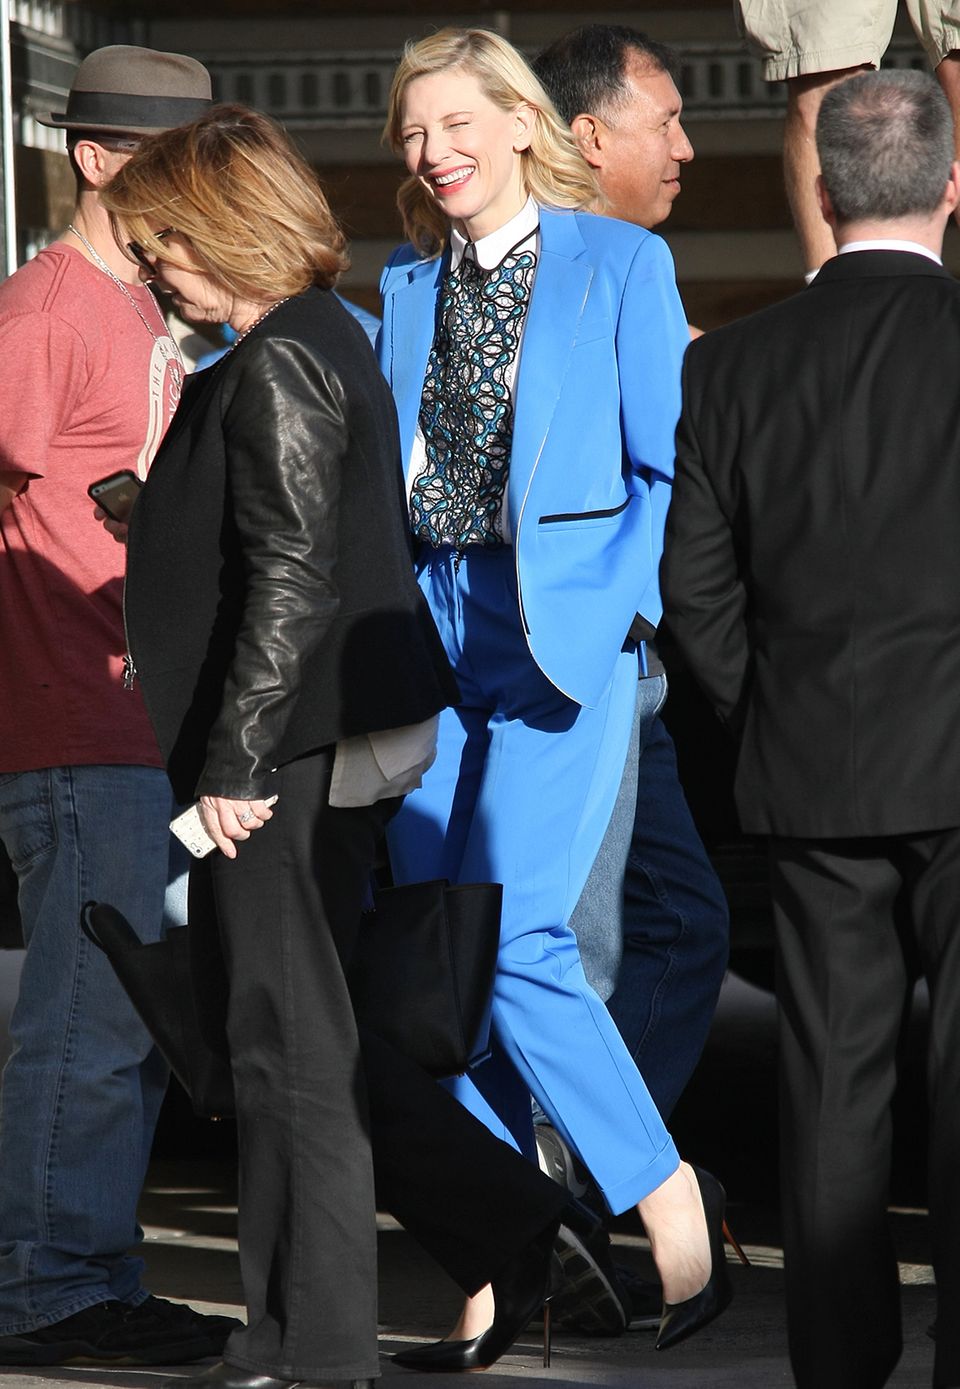 Maskuliner Chic und ein strahlendes Lächeln: Cate Blanchett und ihr blauer Hosenanzug sind in Kombination mit der extravaganten Bluse ein toller Eyecatcher.